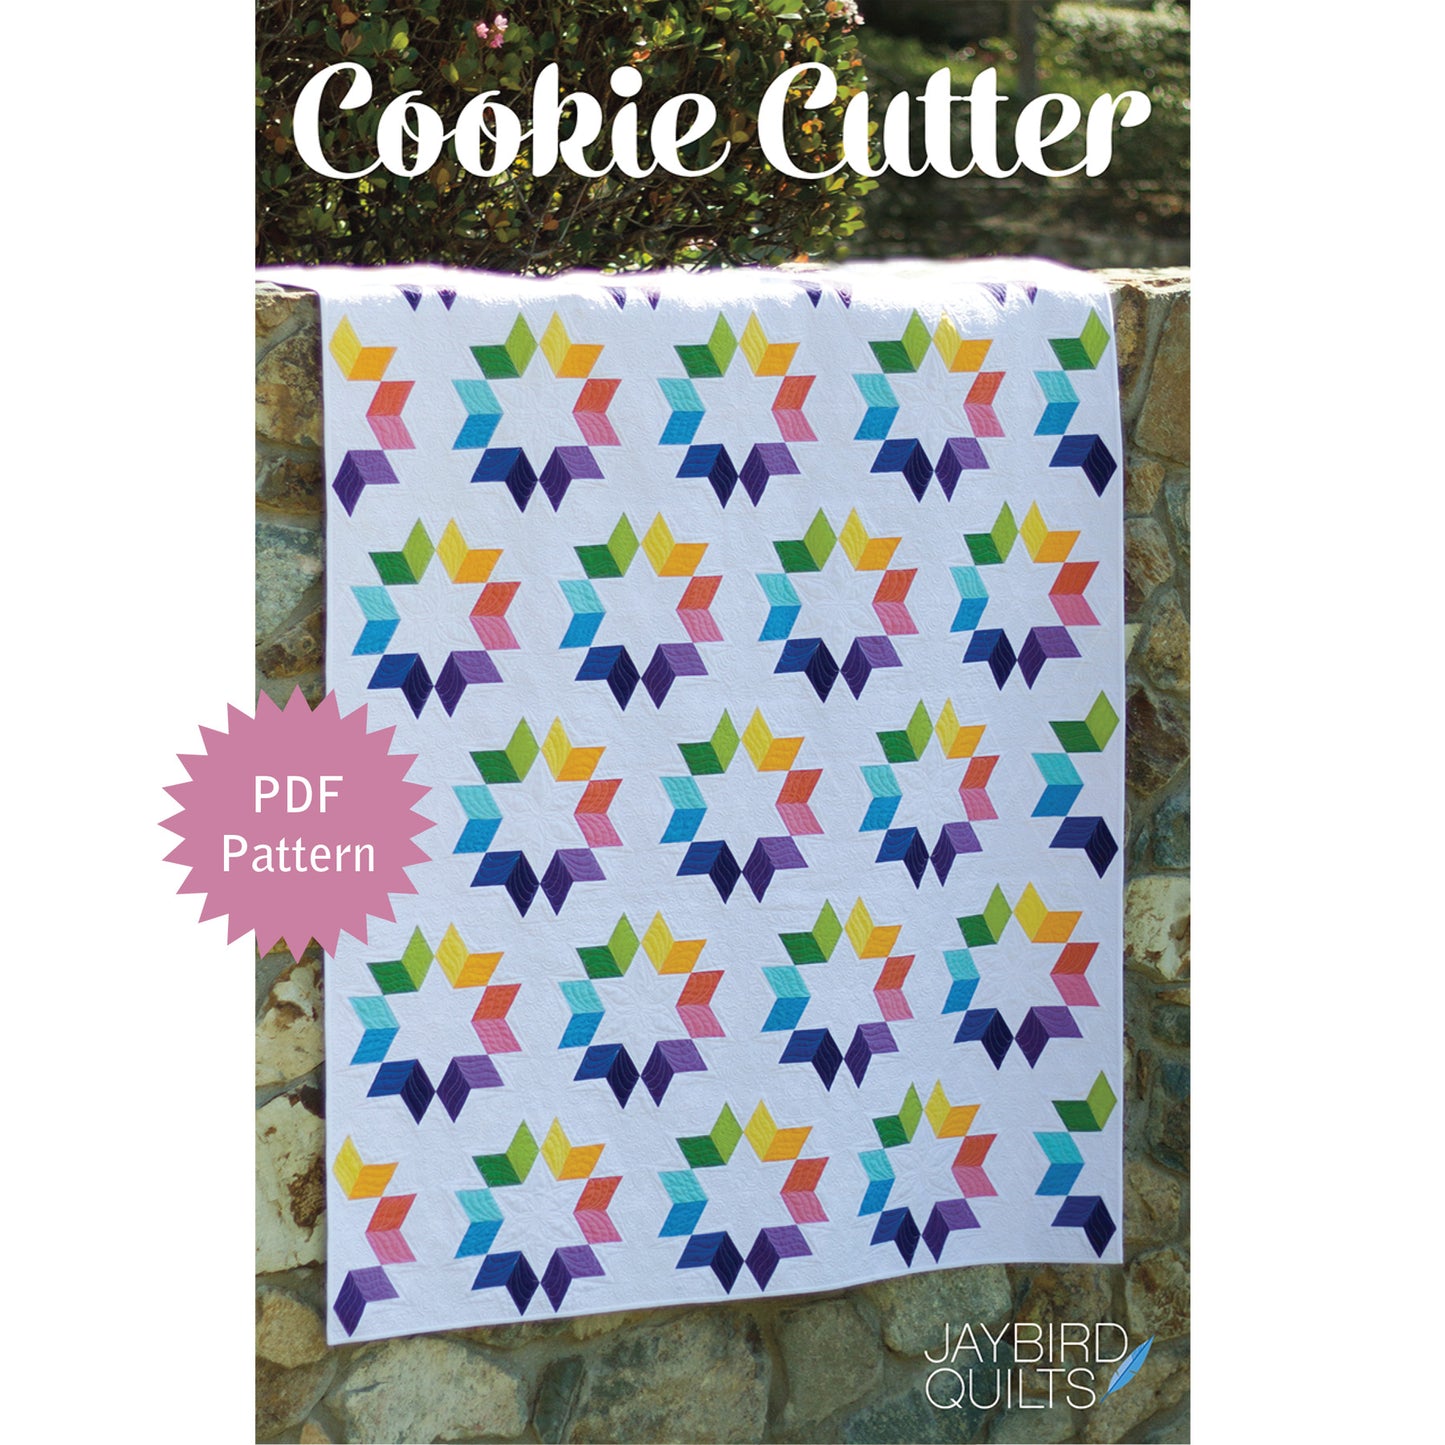 Cookie Cutter PDF Pattern